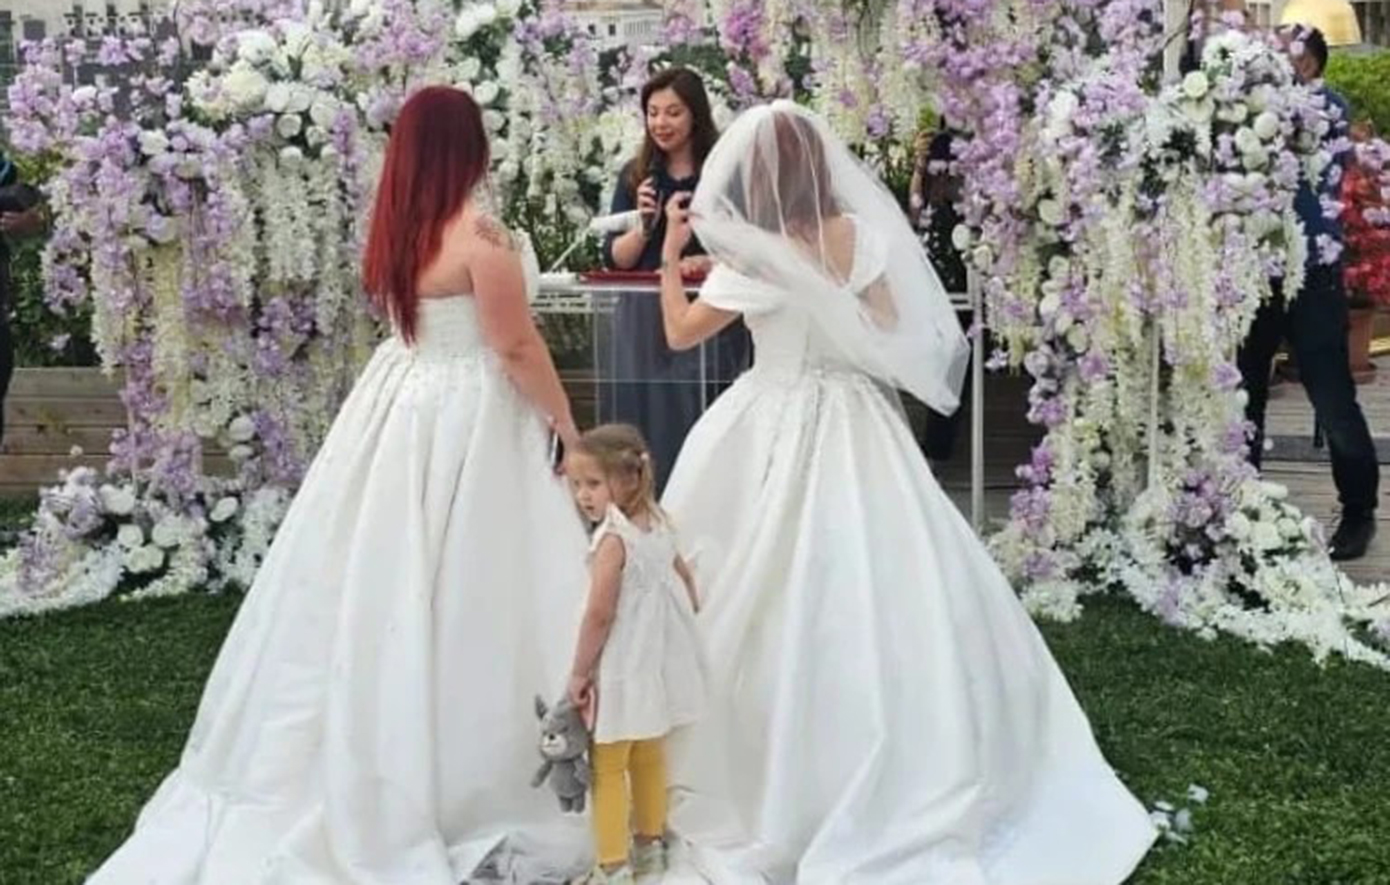 Ο πρώτος ανεπίσημος γάμος ομόφυλου ζευγαριού στην Αλβανία &#8211; «Η κοινωνία μας είναι πολύ πατριαρχική και ομοφοβική»